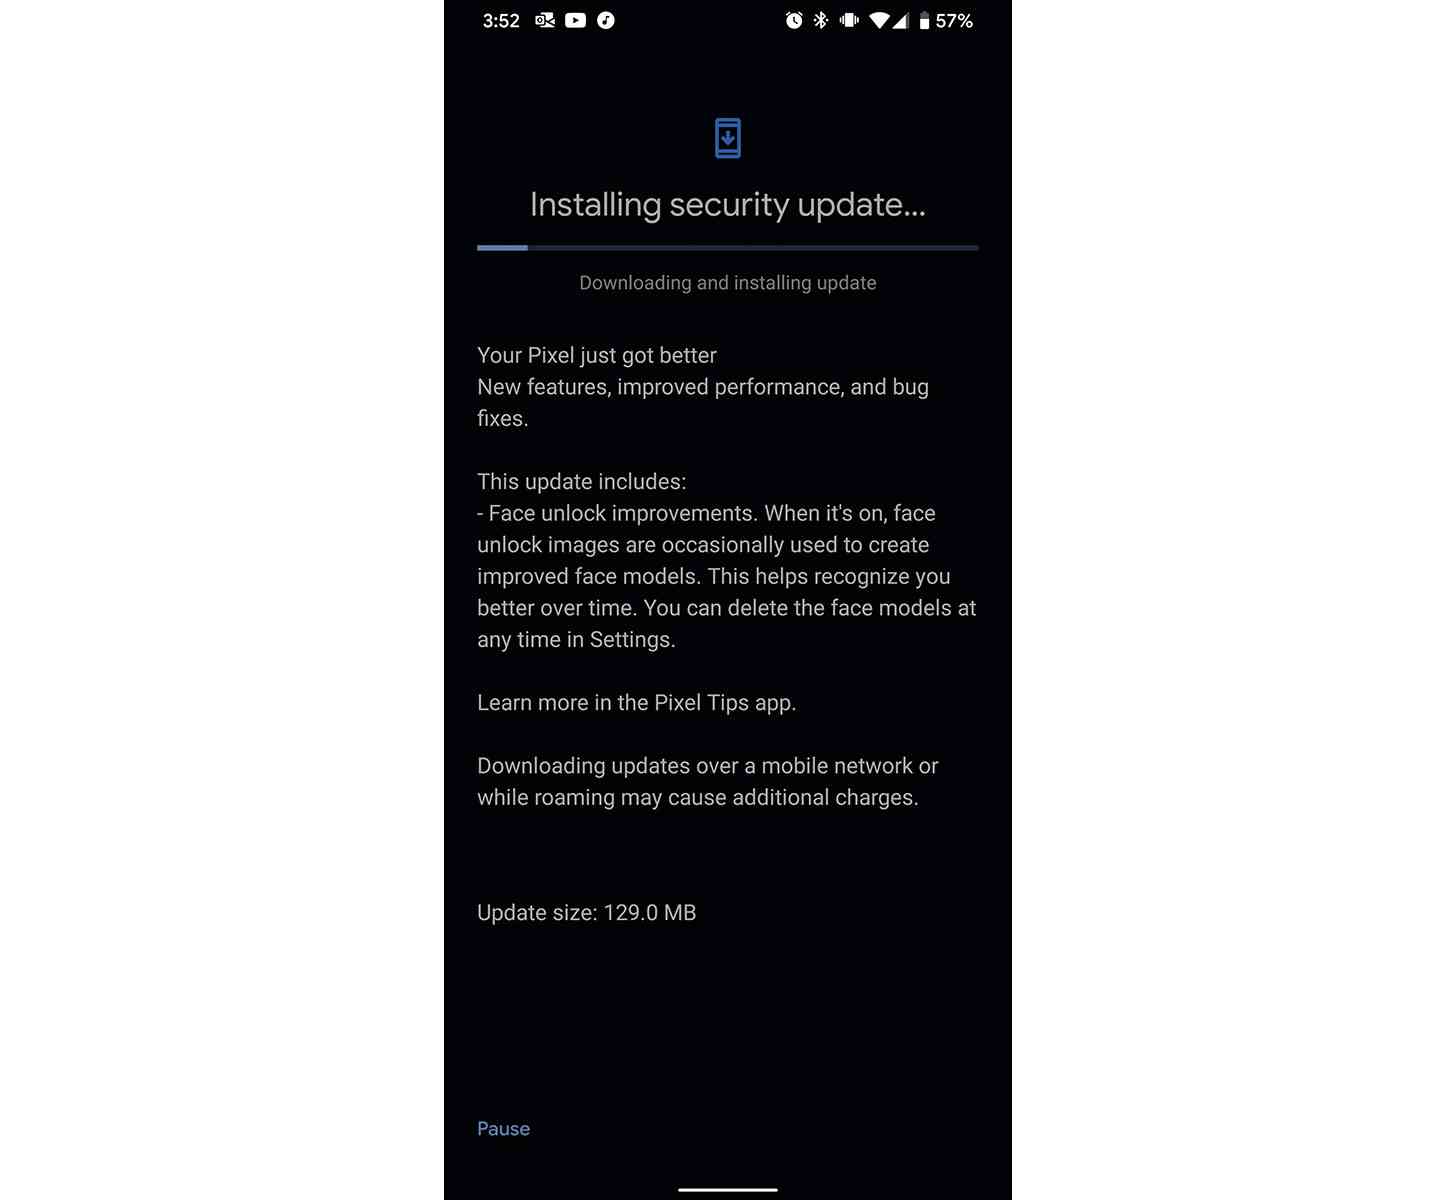 Pixel 4 December 2019 security update